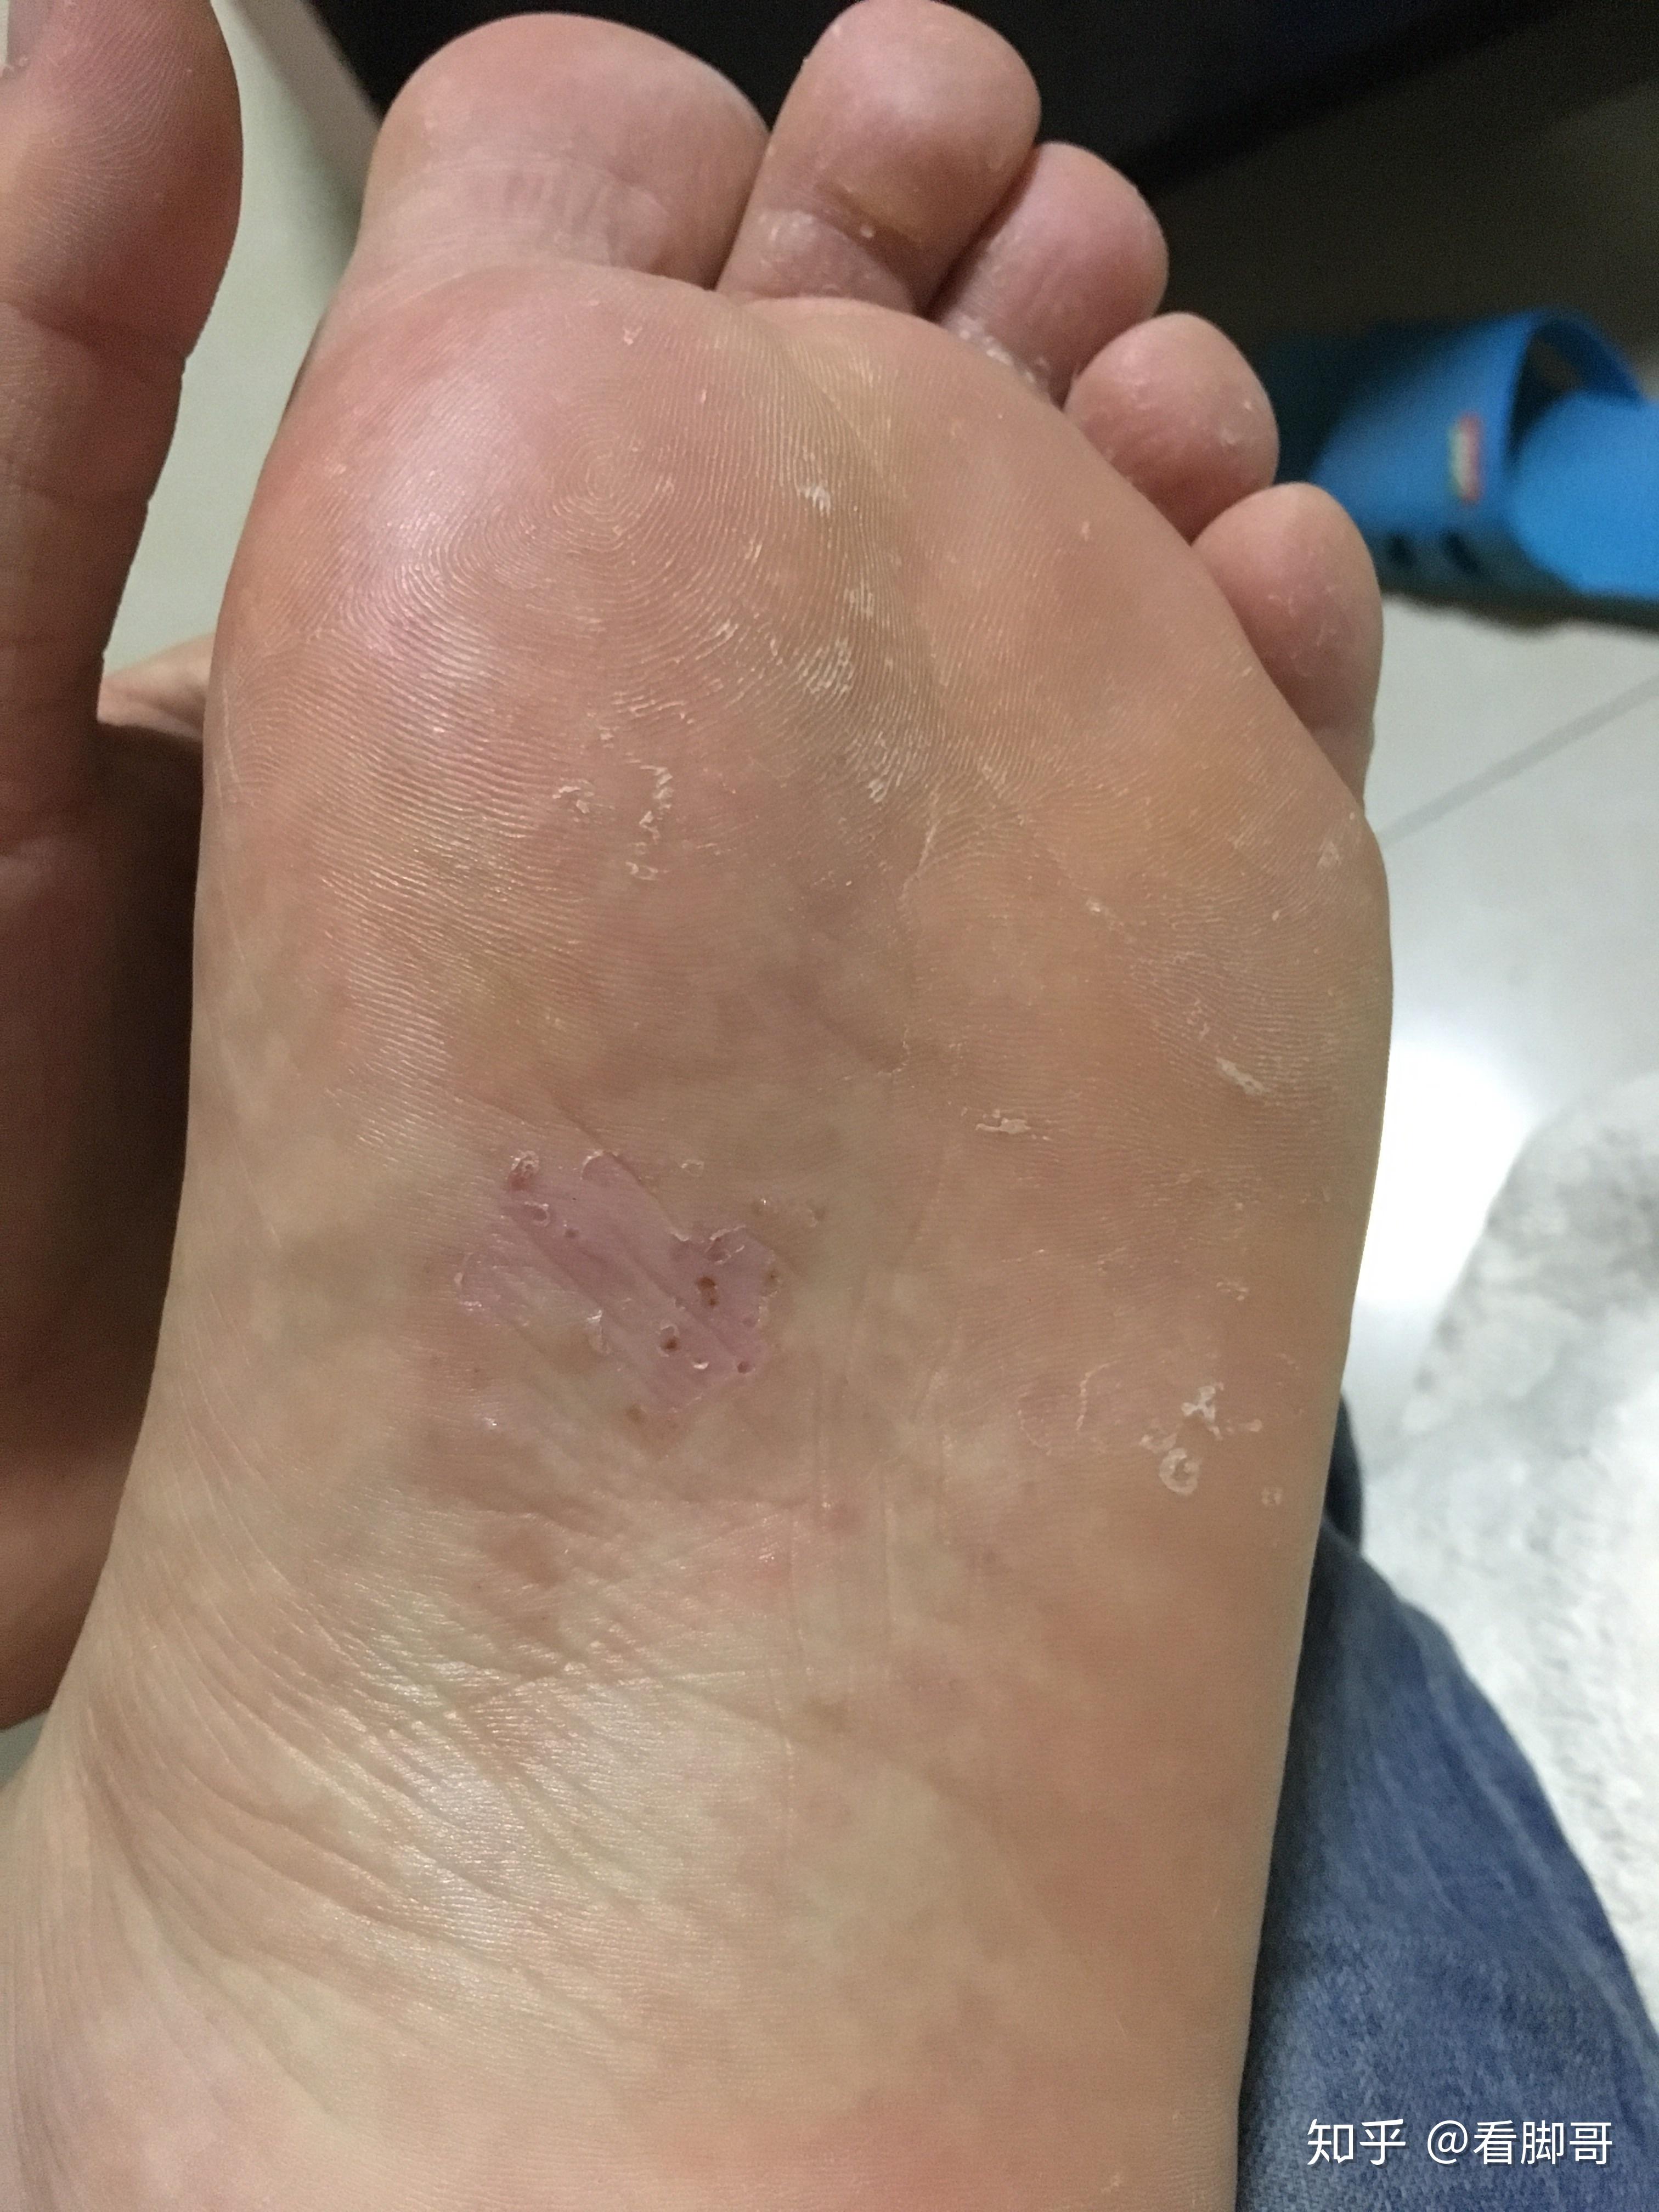 得了香港脚的症状图片,香港脚照片 - 伤感说说吧